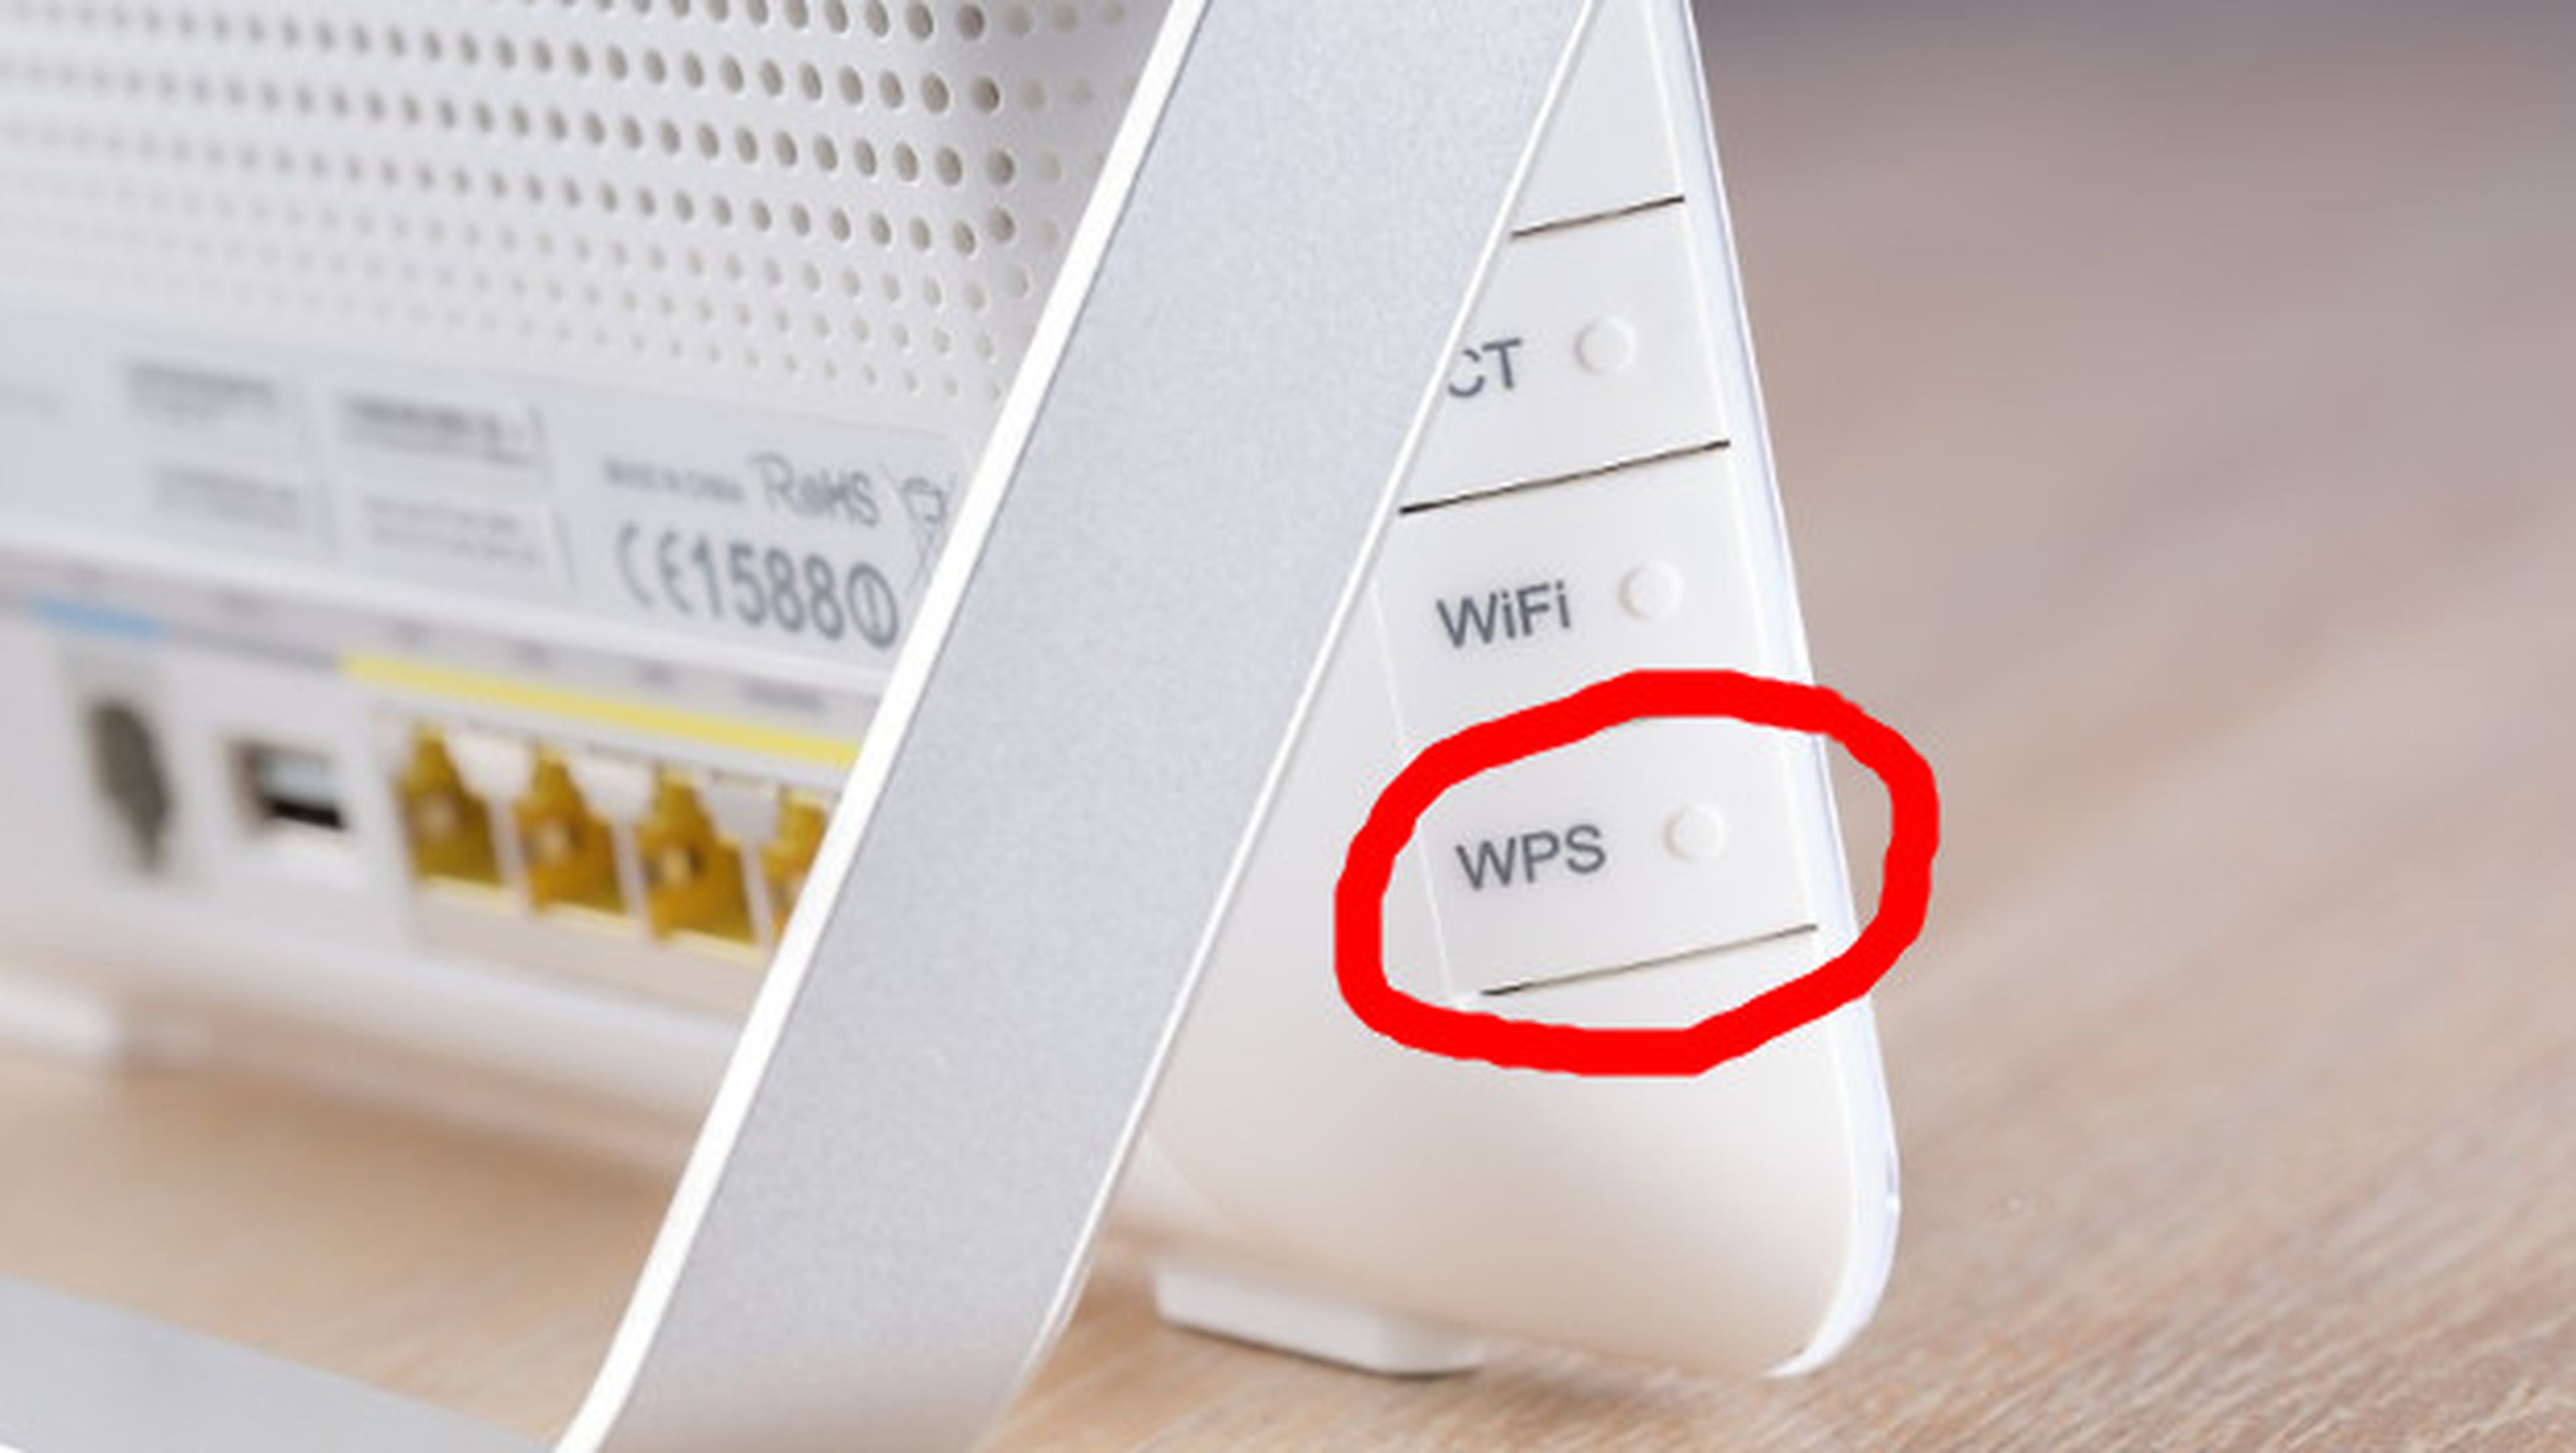 Para qué sirve el botón WPS del router.